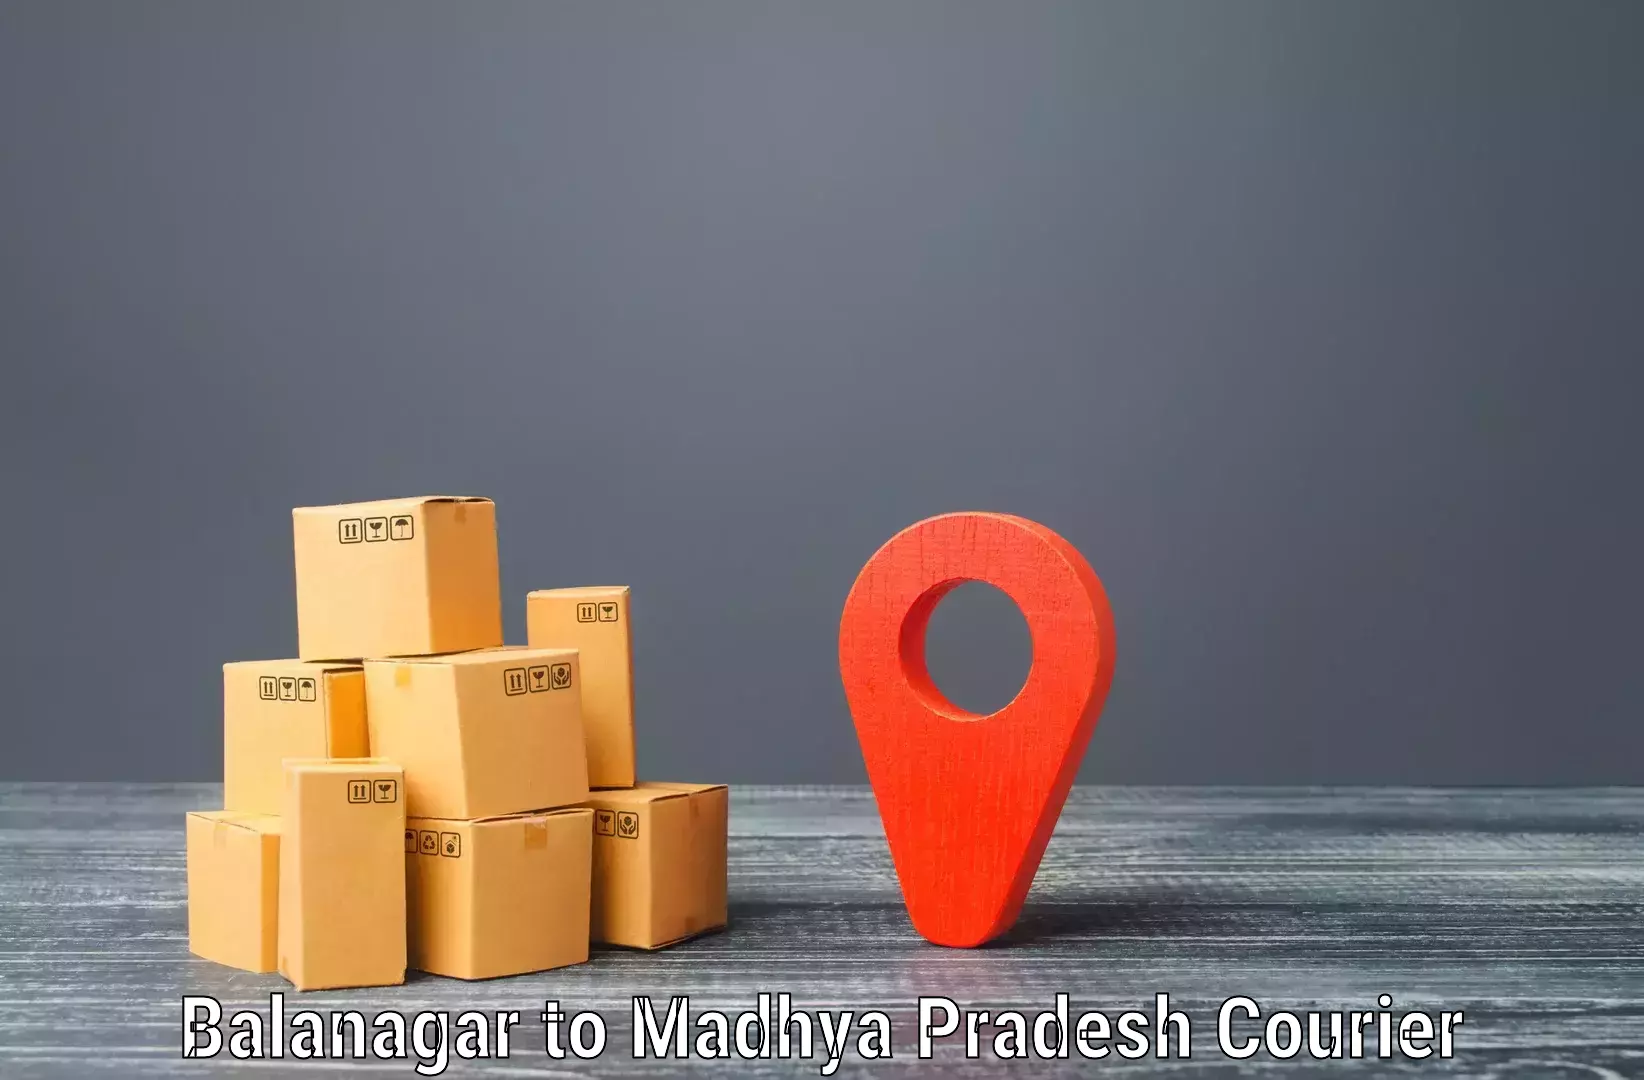 Comprehensive logistics solutions Balanagar to Ranchha